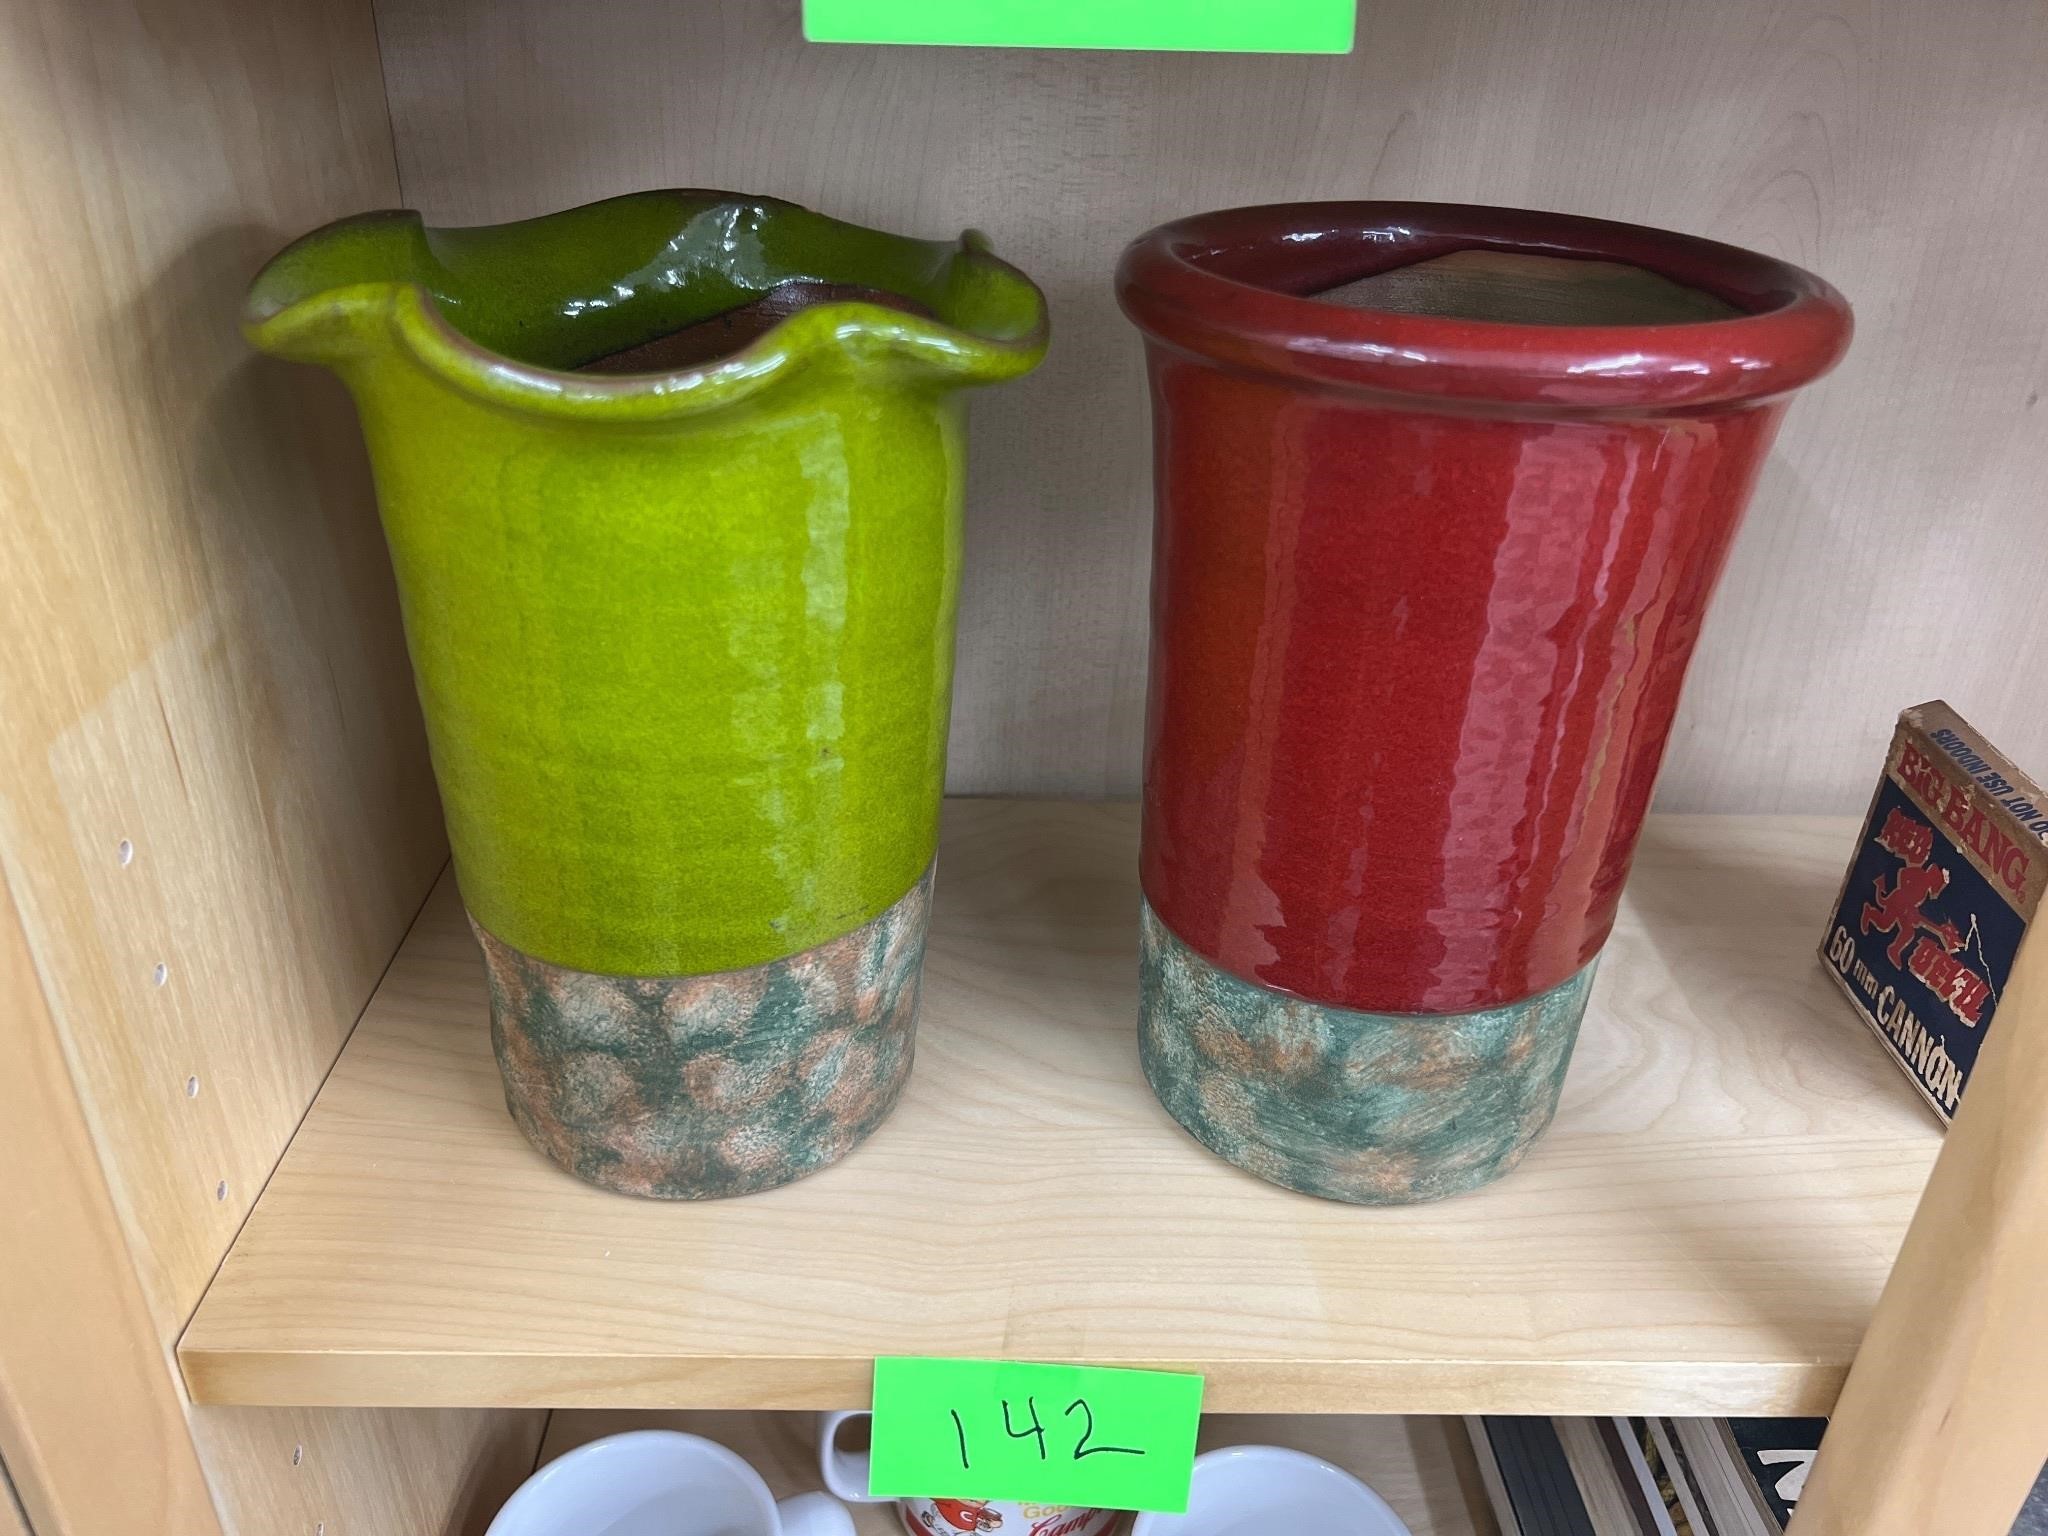 Glazed pottery cases